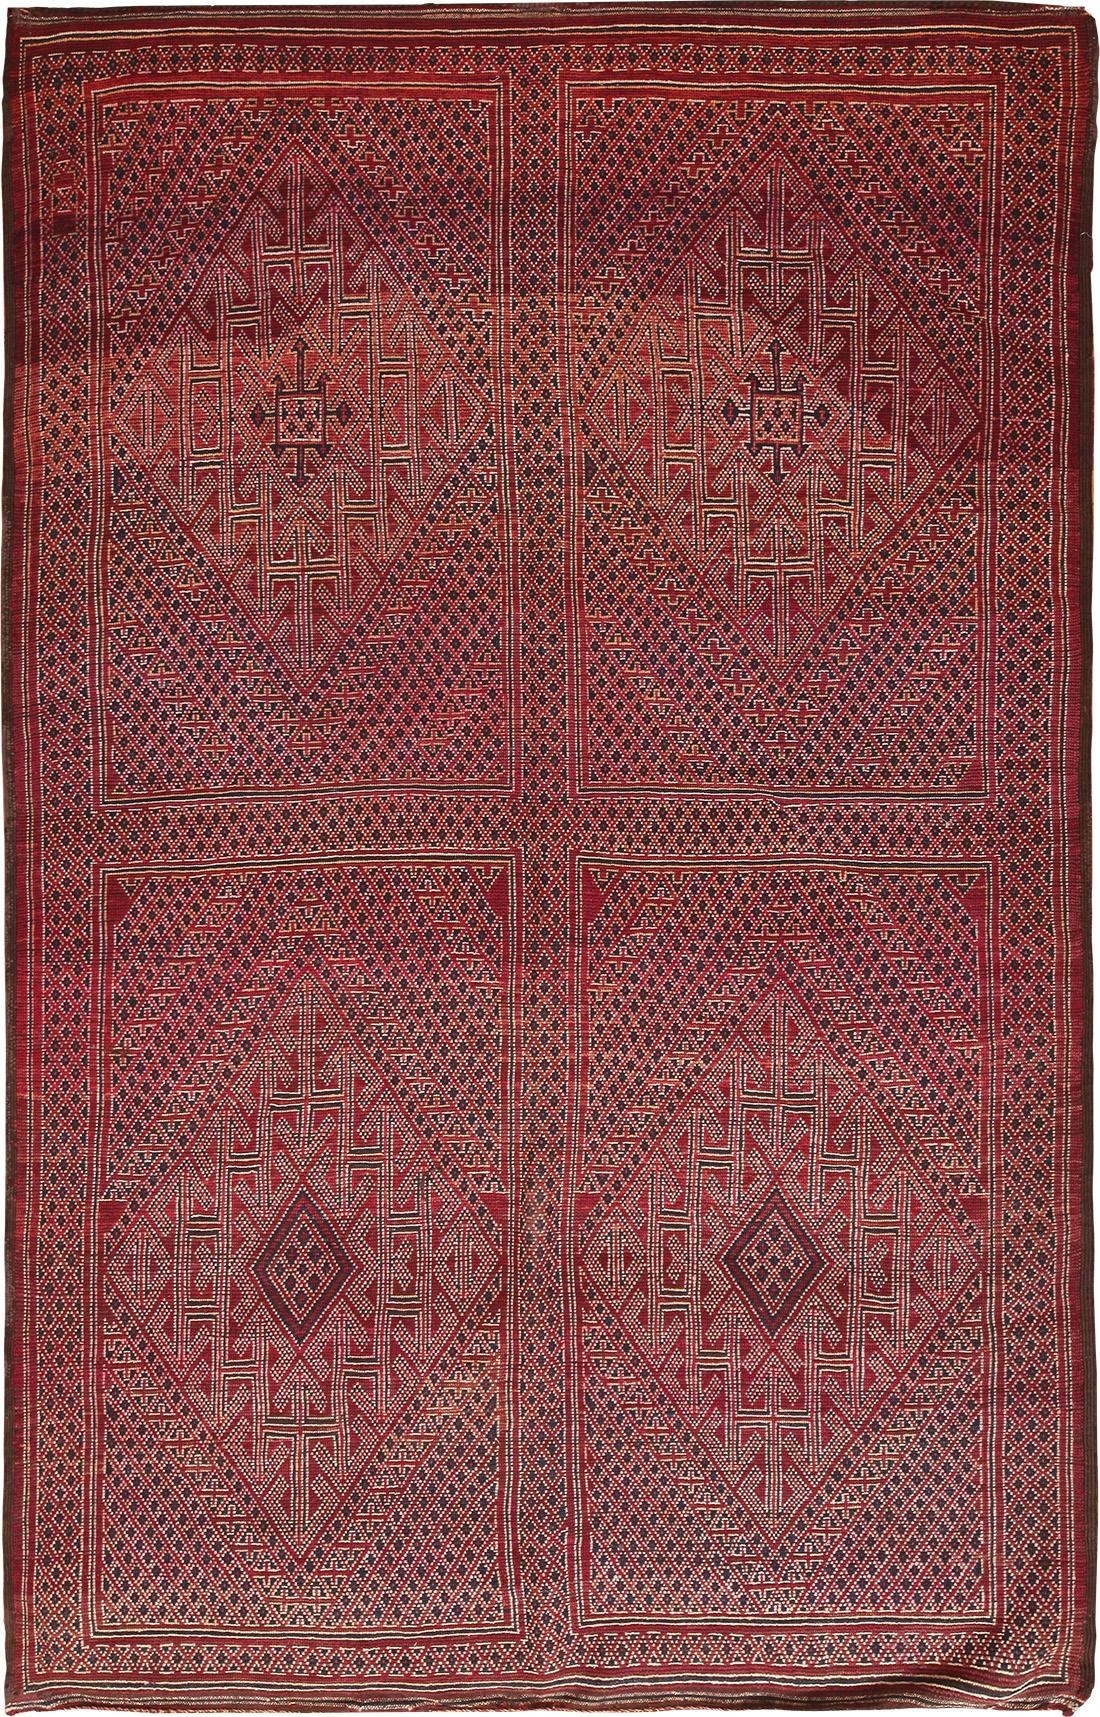 Magnifique tapis marocain rouge vintage, pays d'origine : Maroc, date vers le milieu du 20ème siècle. Dimensions : 1,7 m x 3,3 m (5 ft 7 in x 10 ft 10 in).